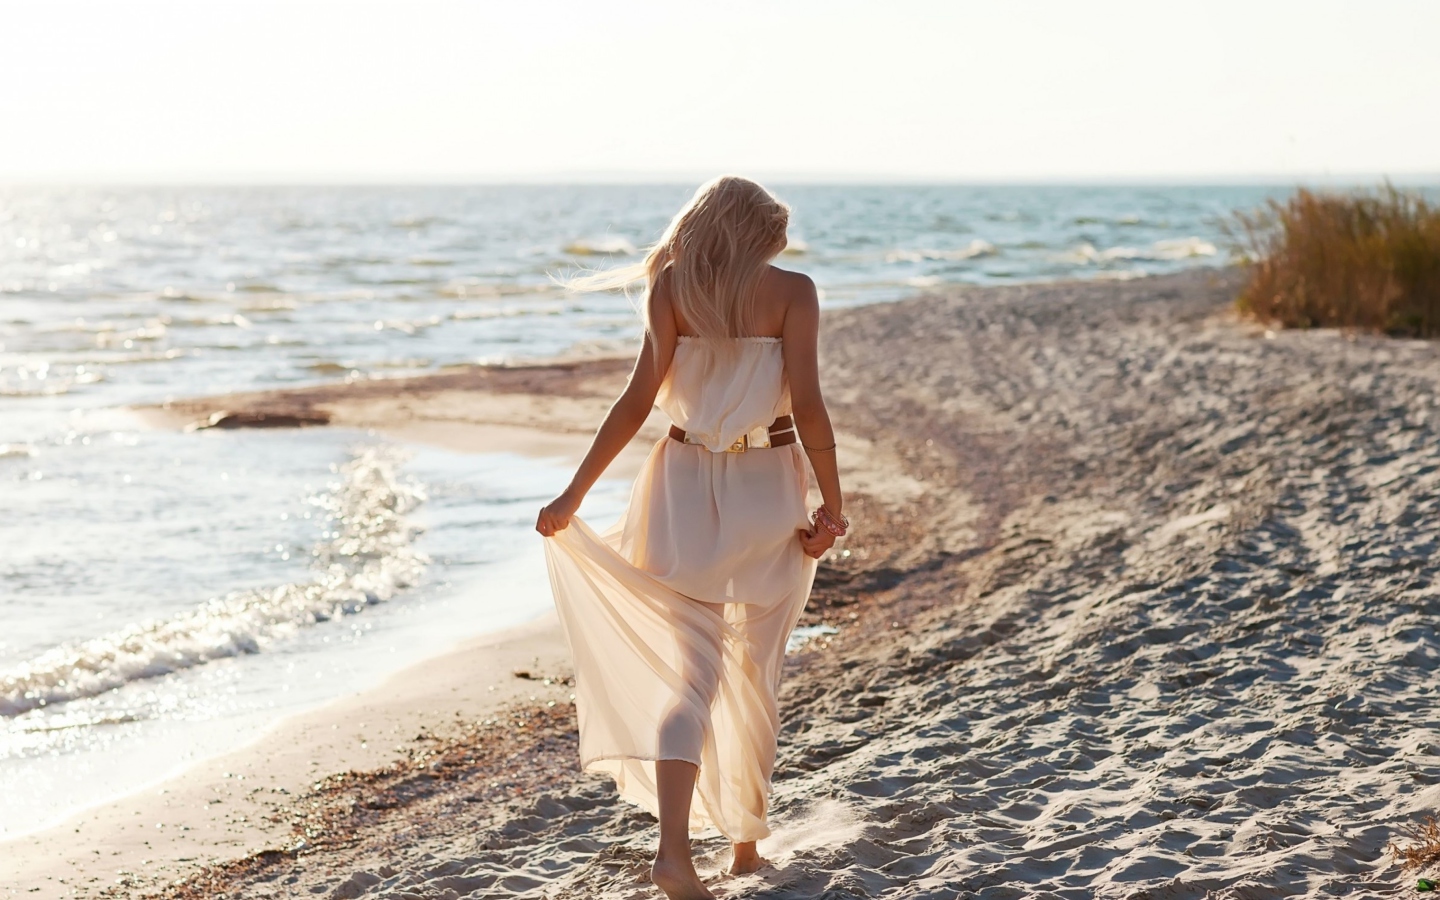 Обои Girl In White Dress On Beach 1440x900